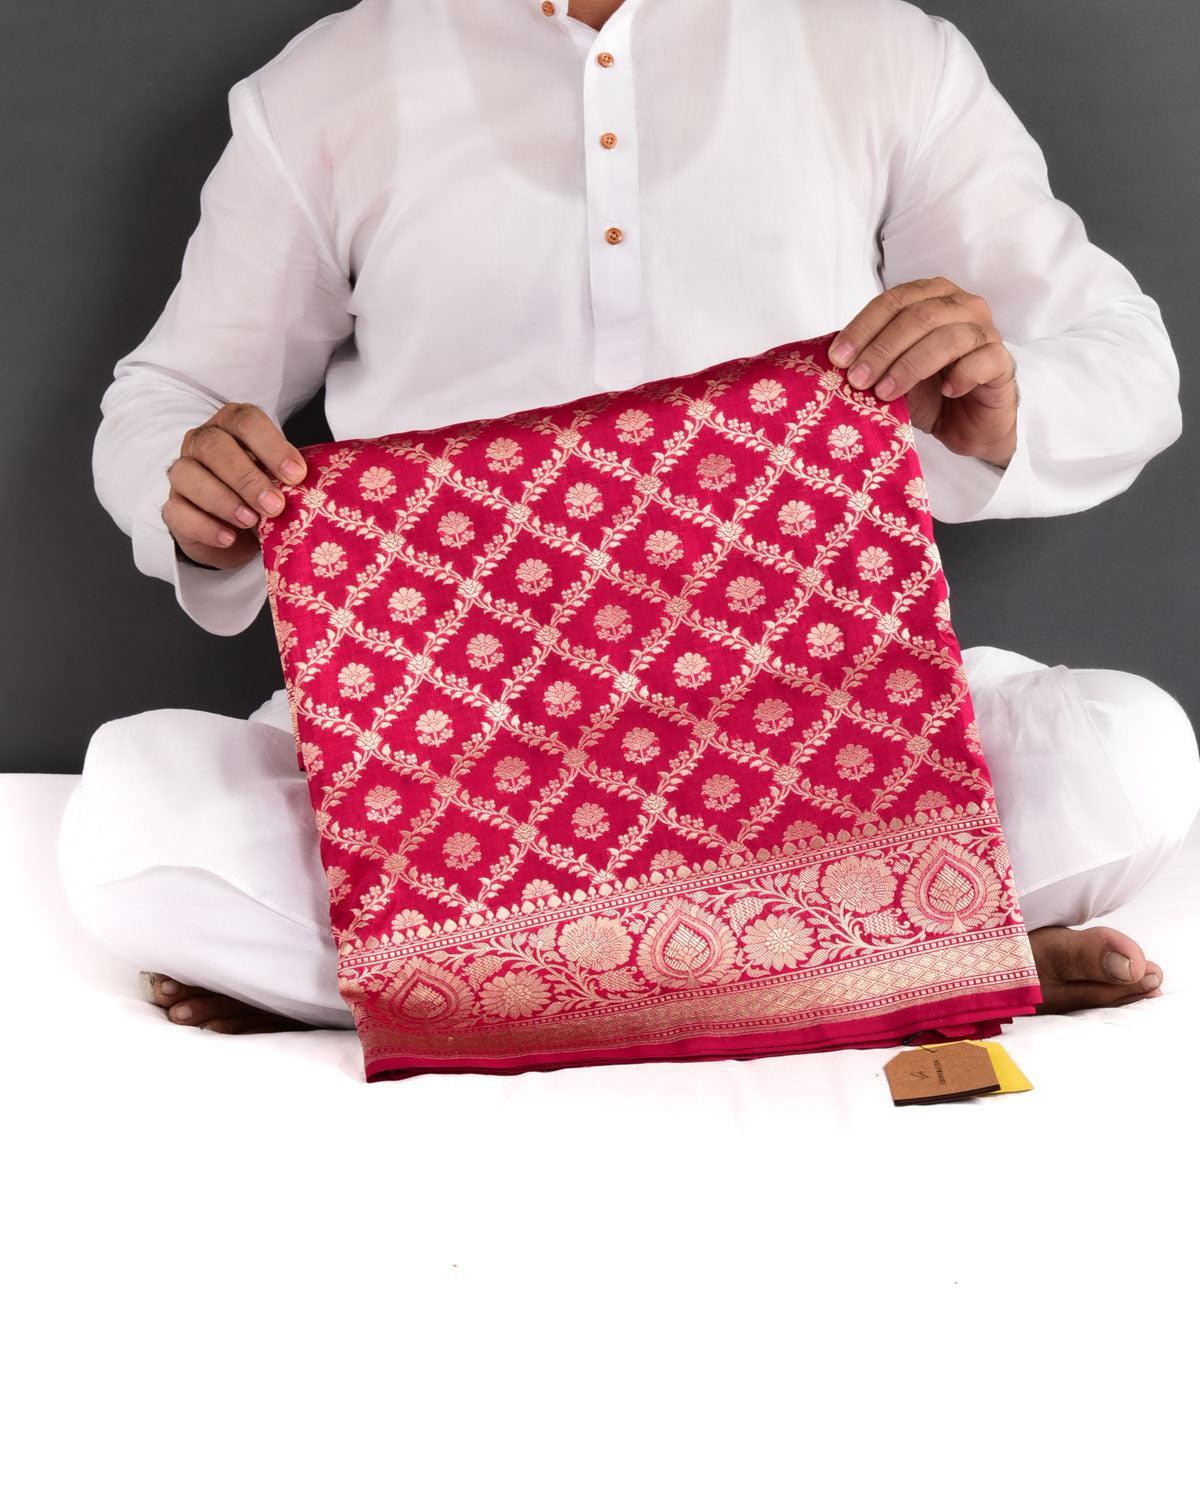 Rani Pink Banarasi Gold Zari Jangla Buti Cutwork Brocade Handwoven Katan Silk Saree - By HolyWeaves, Benares